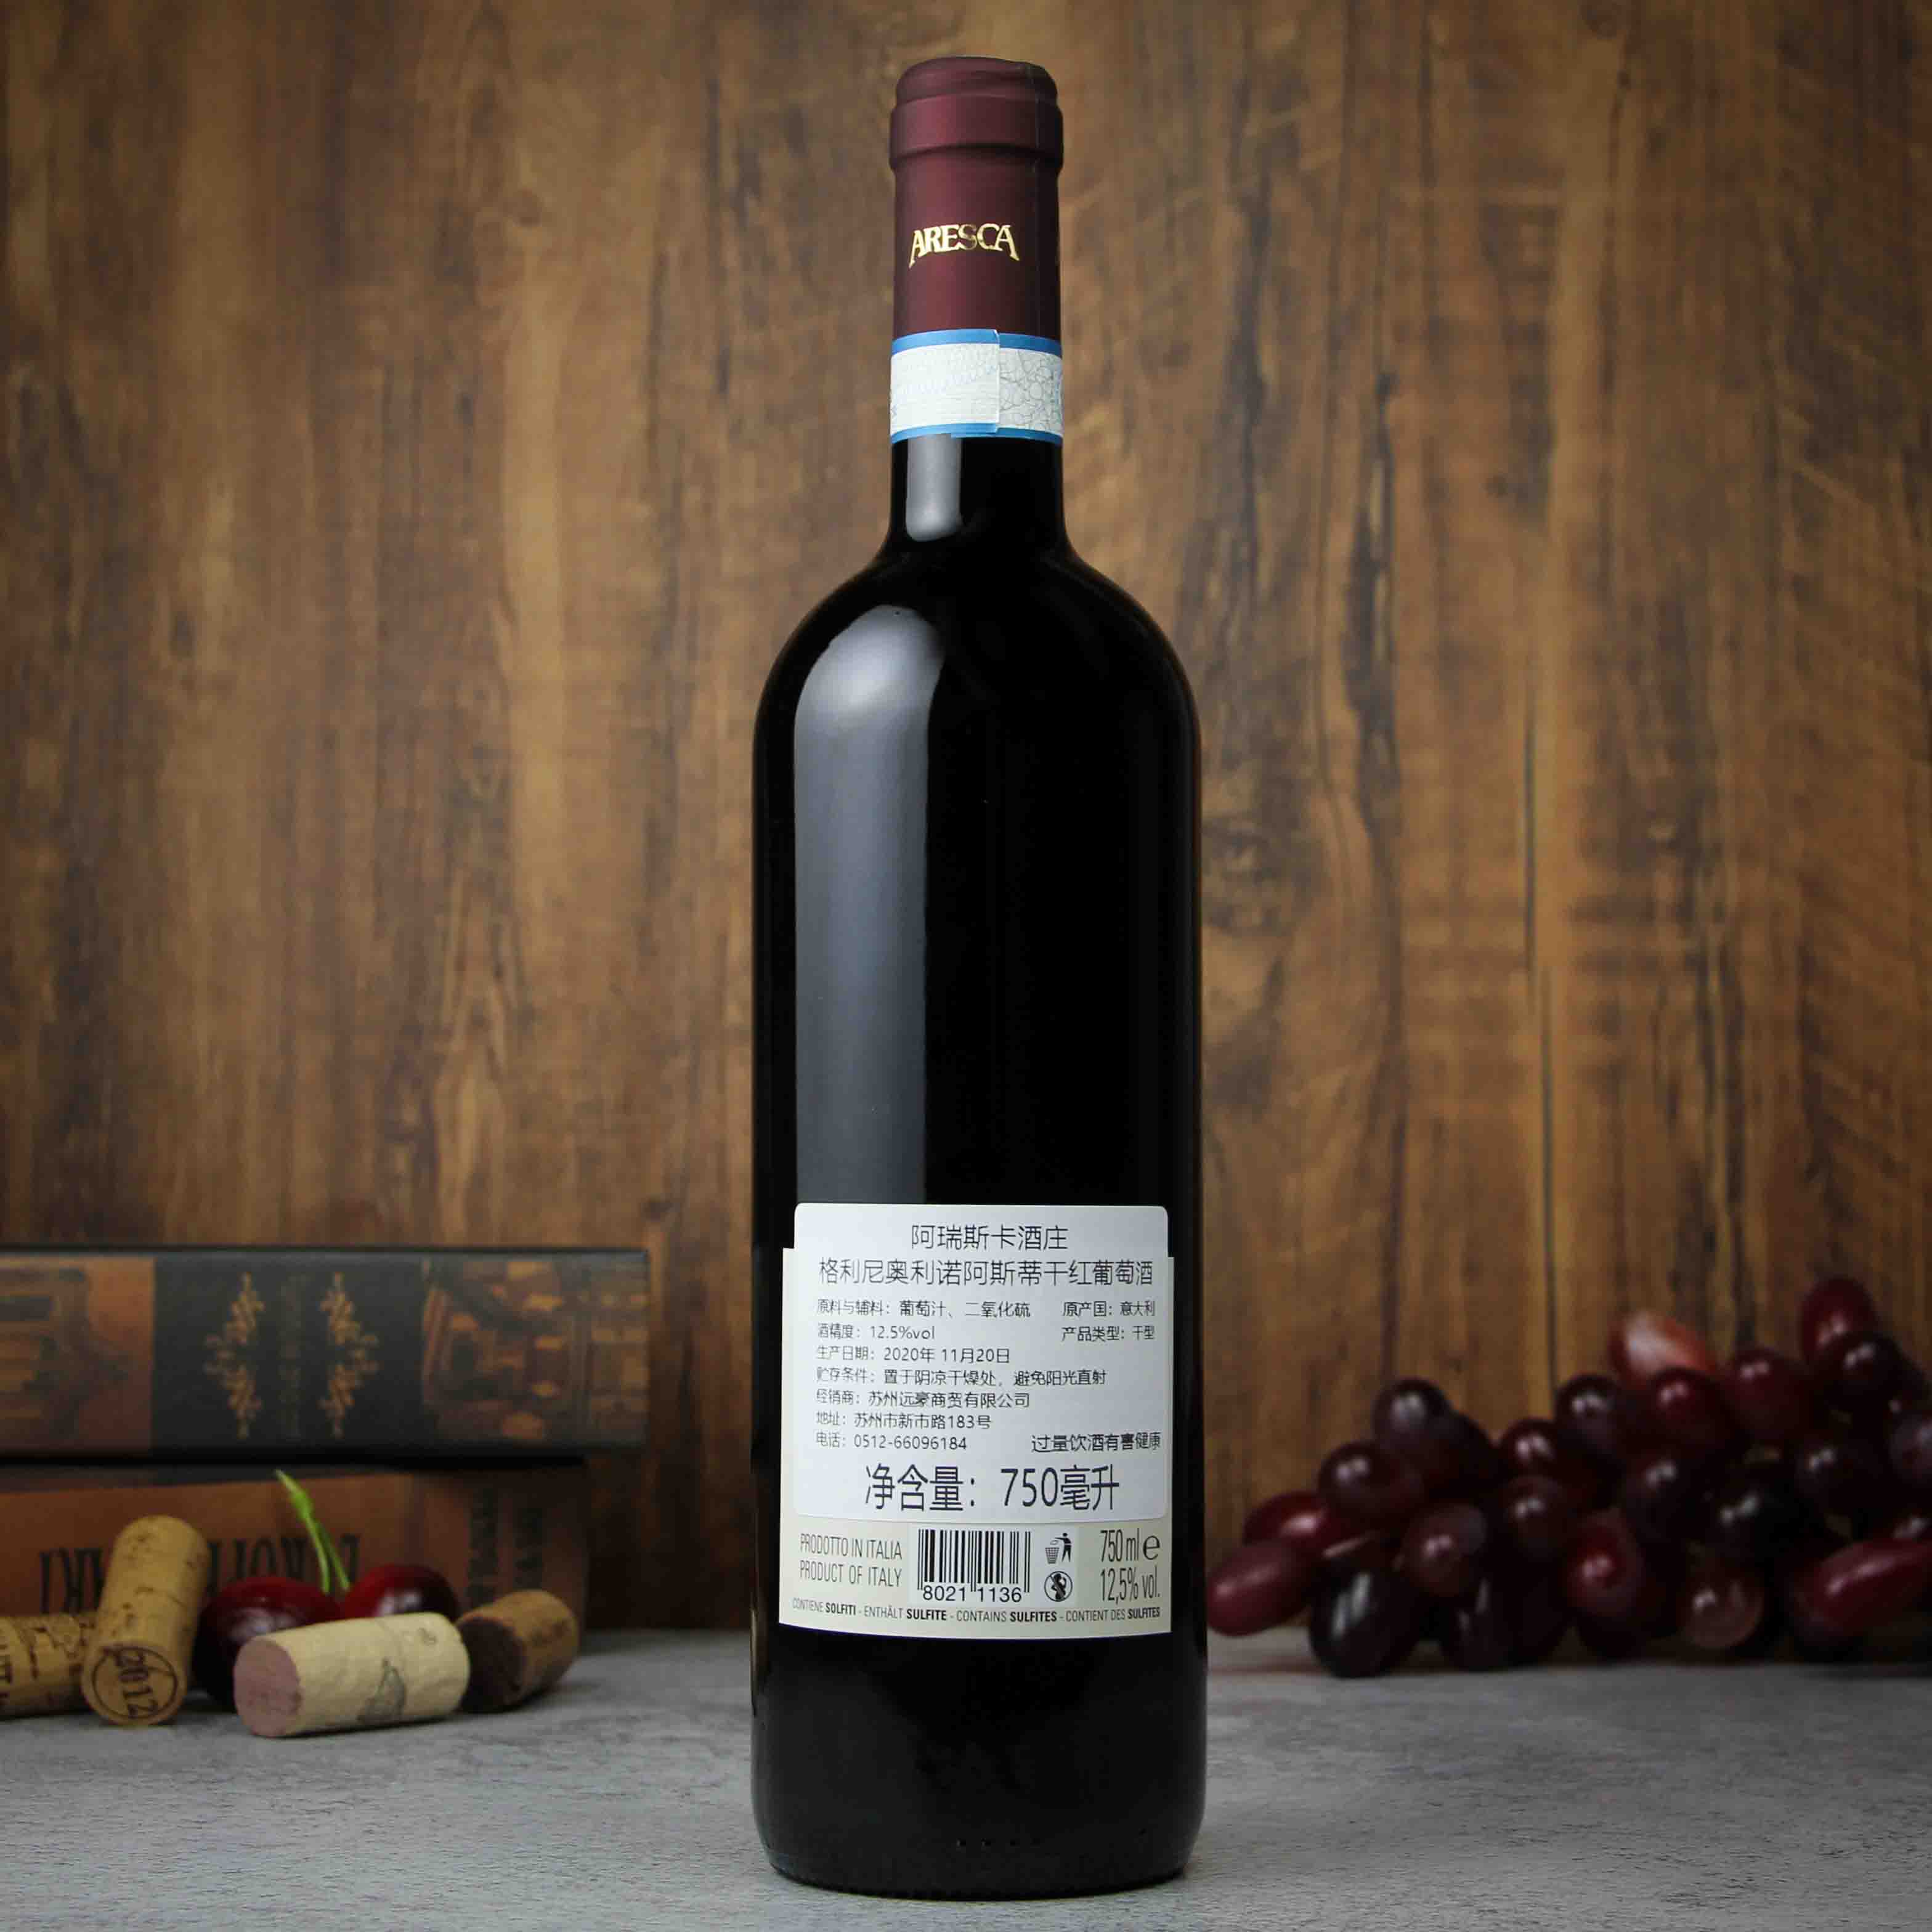 意大利皮埃蒙特ARESCA酒庄格丽尼奥里诺·阿斯蒂红葡萄酒红酒